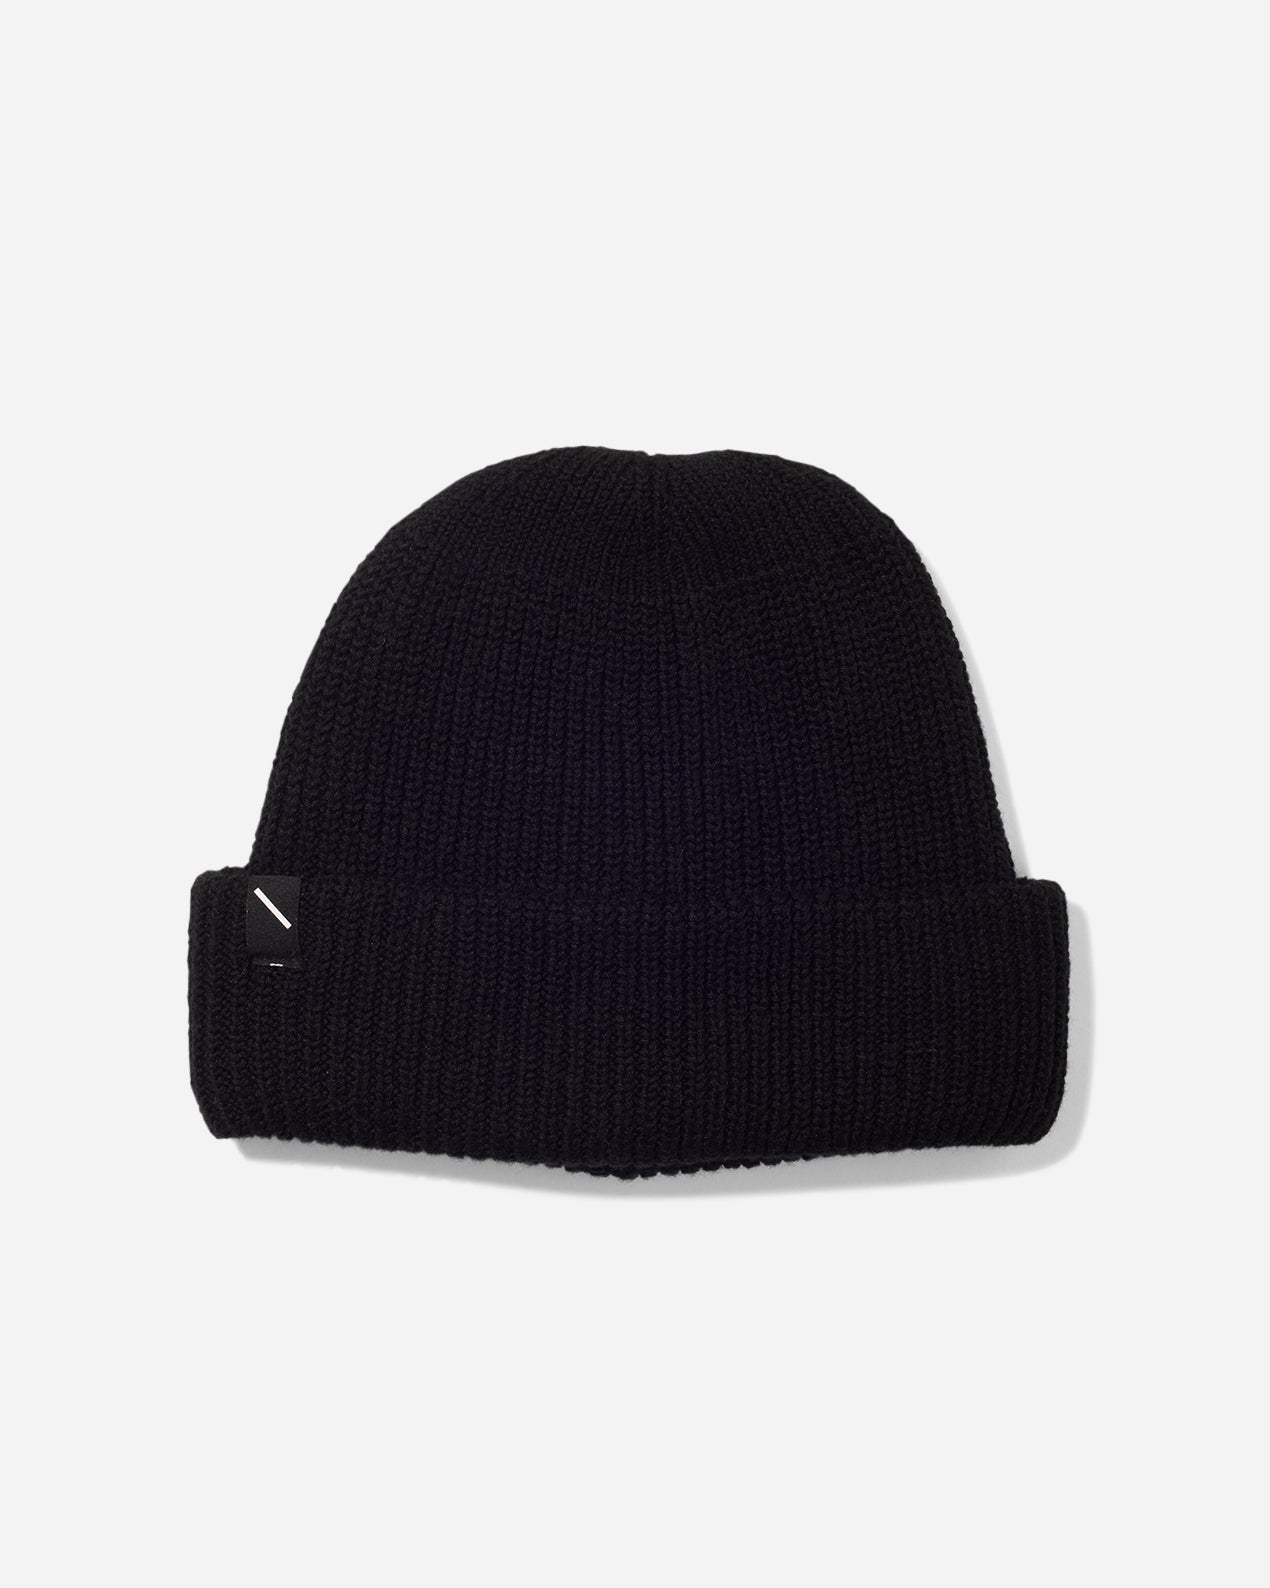 CORE Classic Knit Hat - Black